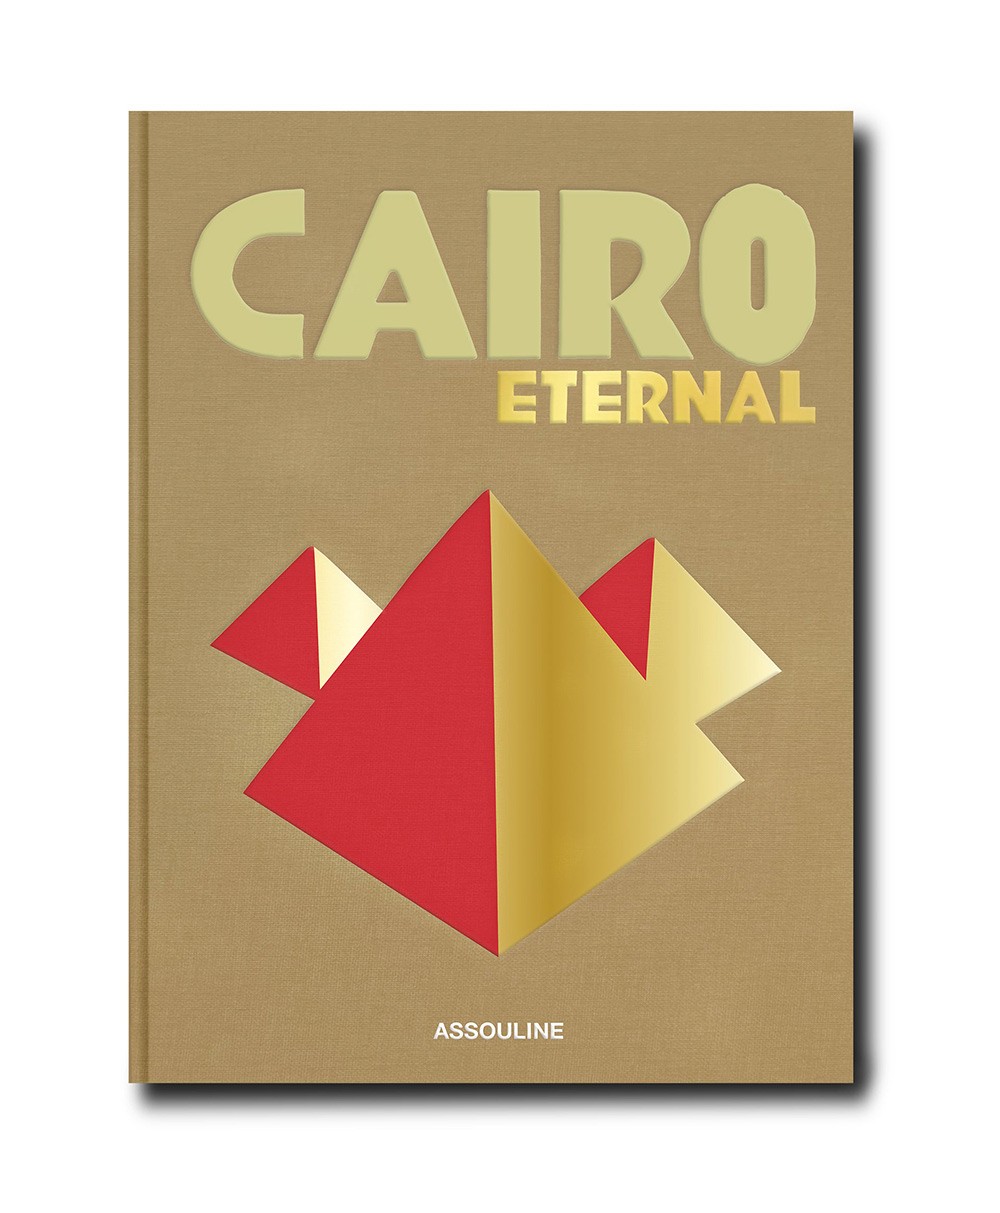 Produktbild des Coffee Table Books „Cairo Eternal“ von Assouline im RAUM concept store 